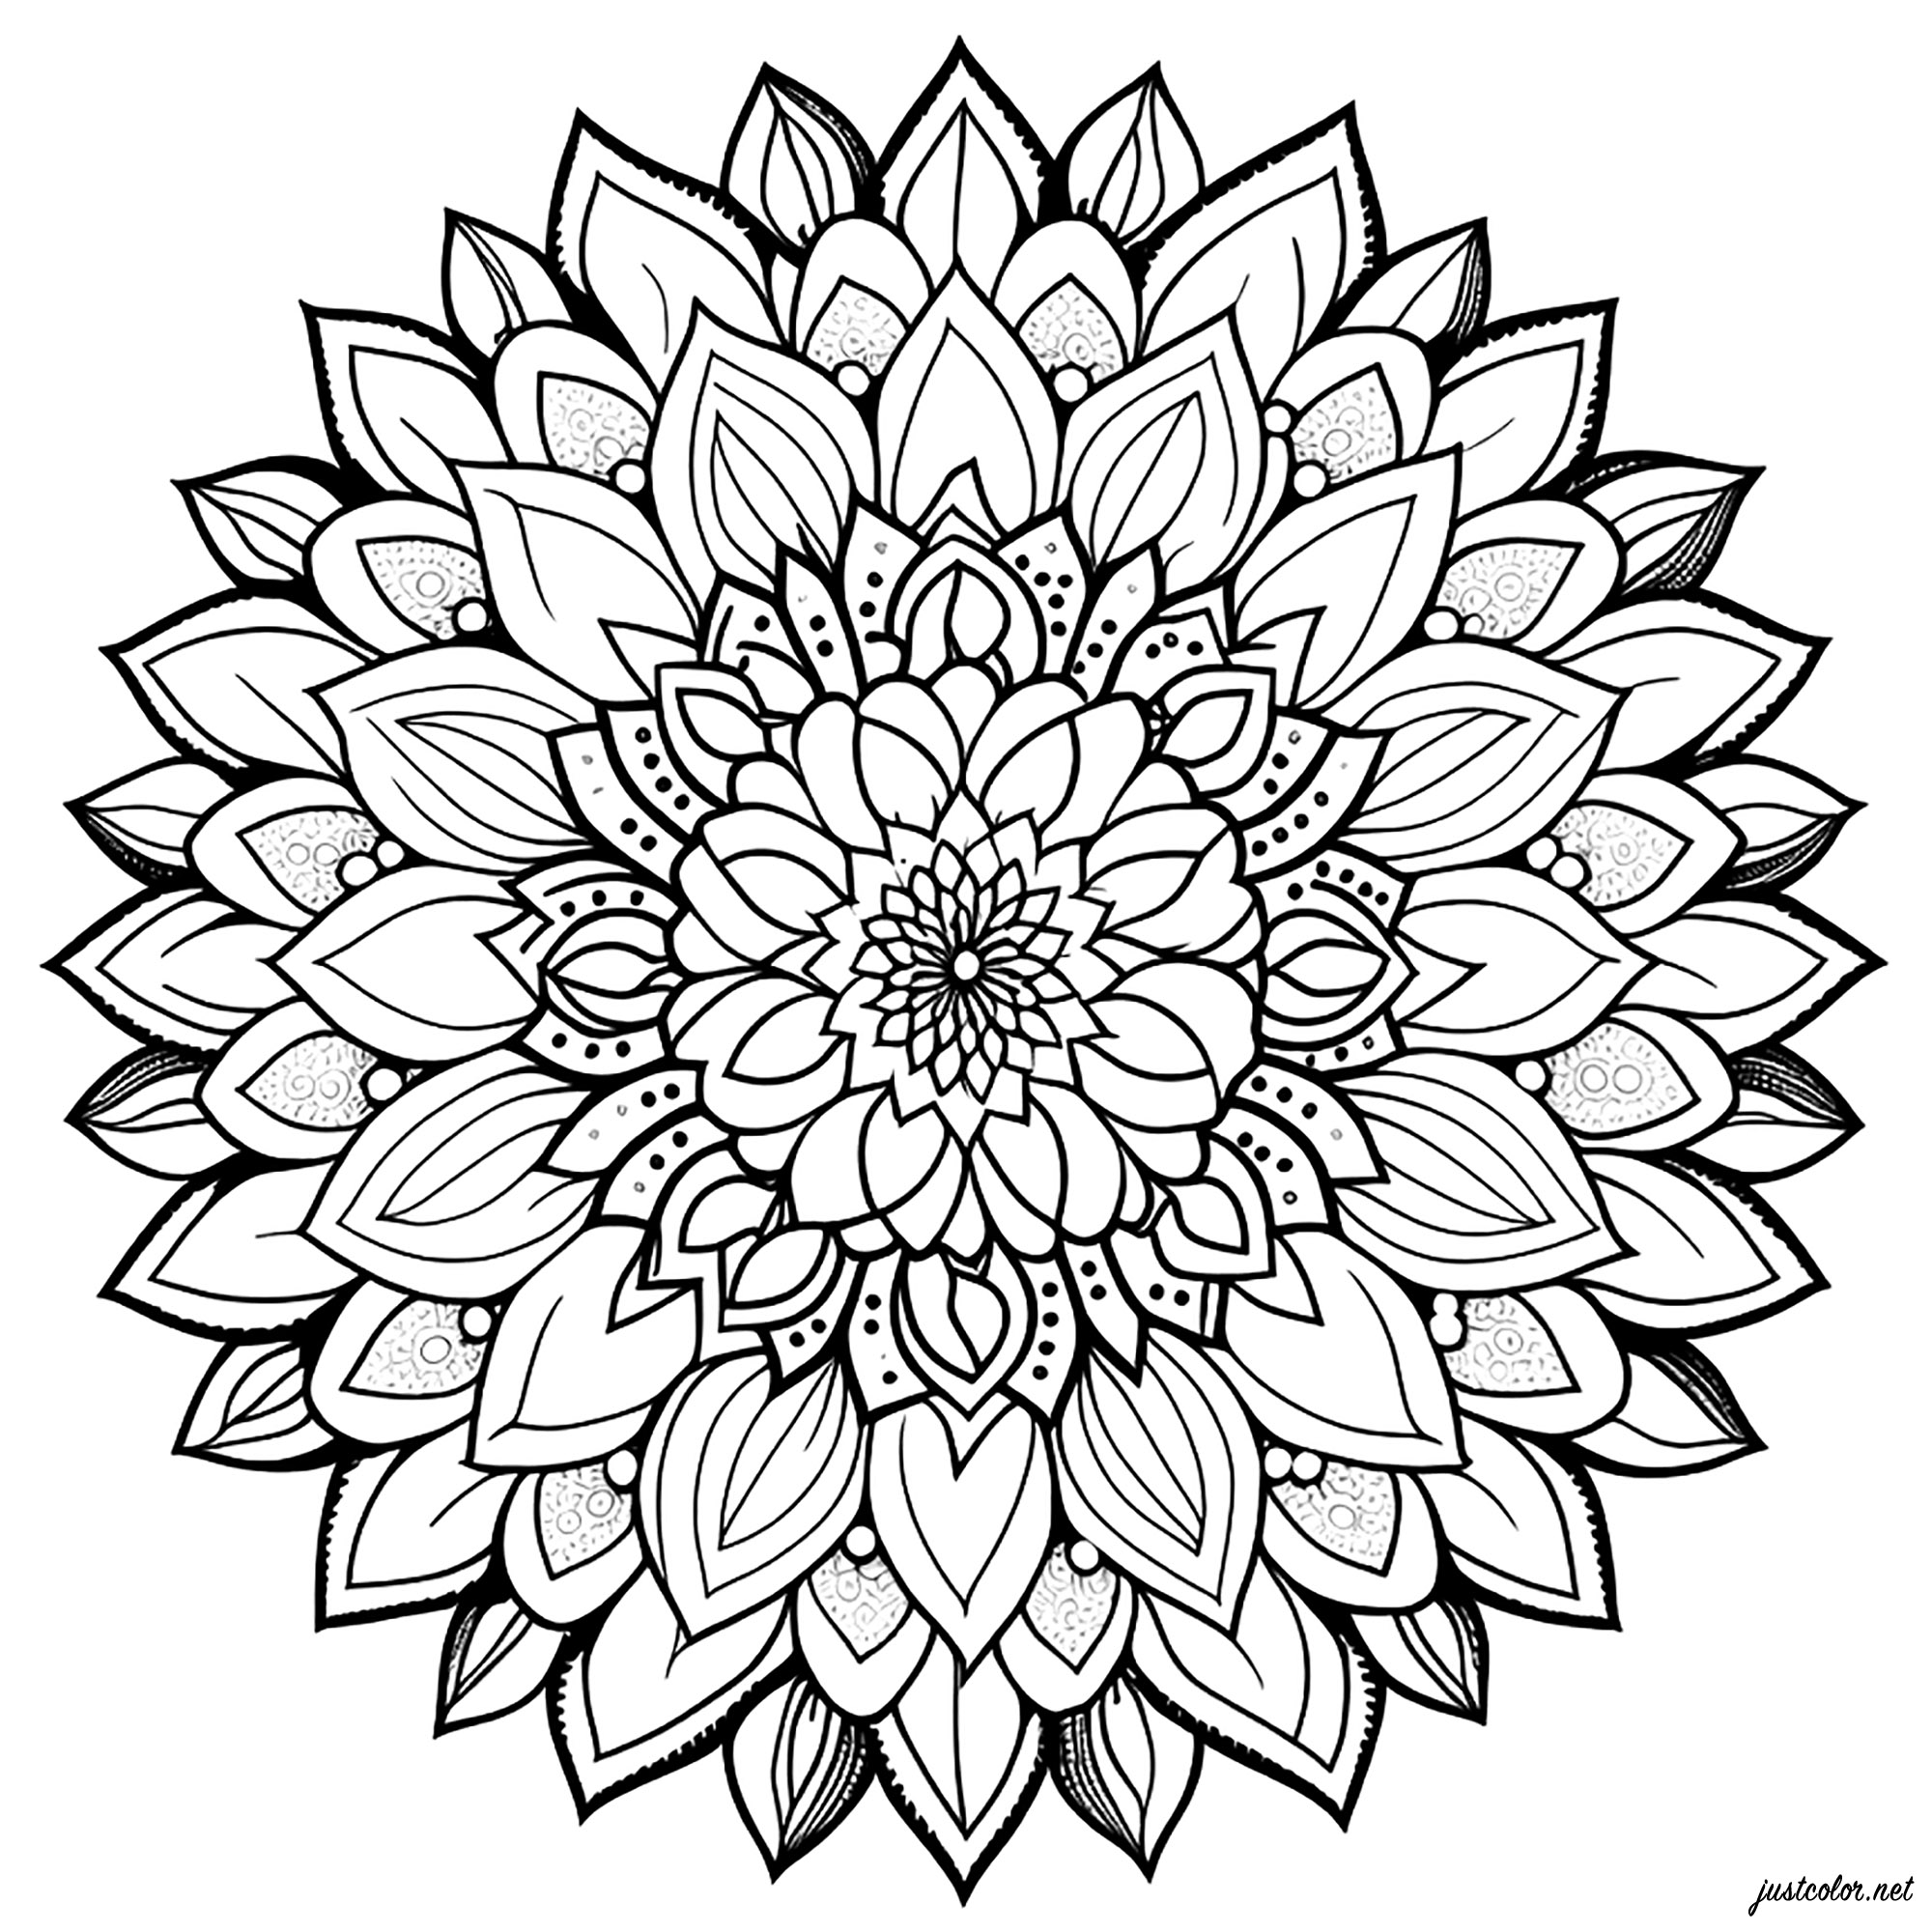 Mandala simples com pétalas. Esta simples mandala de pétalas para colorir é muito bonita e fácil de fazer. É composta por flores e pétalas de flores que se encaixam perfeitamente umas nas outras.